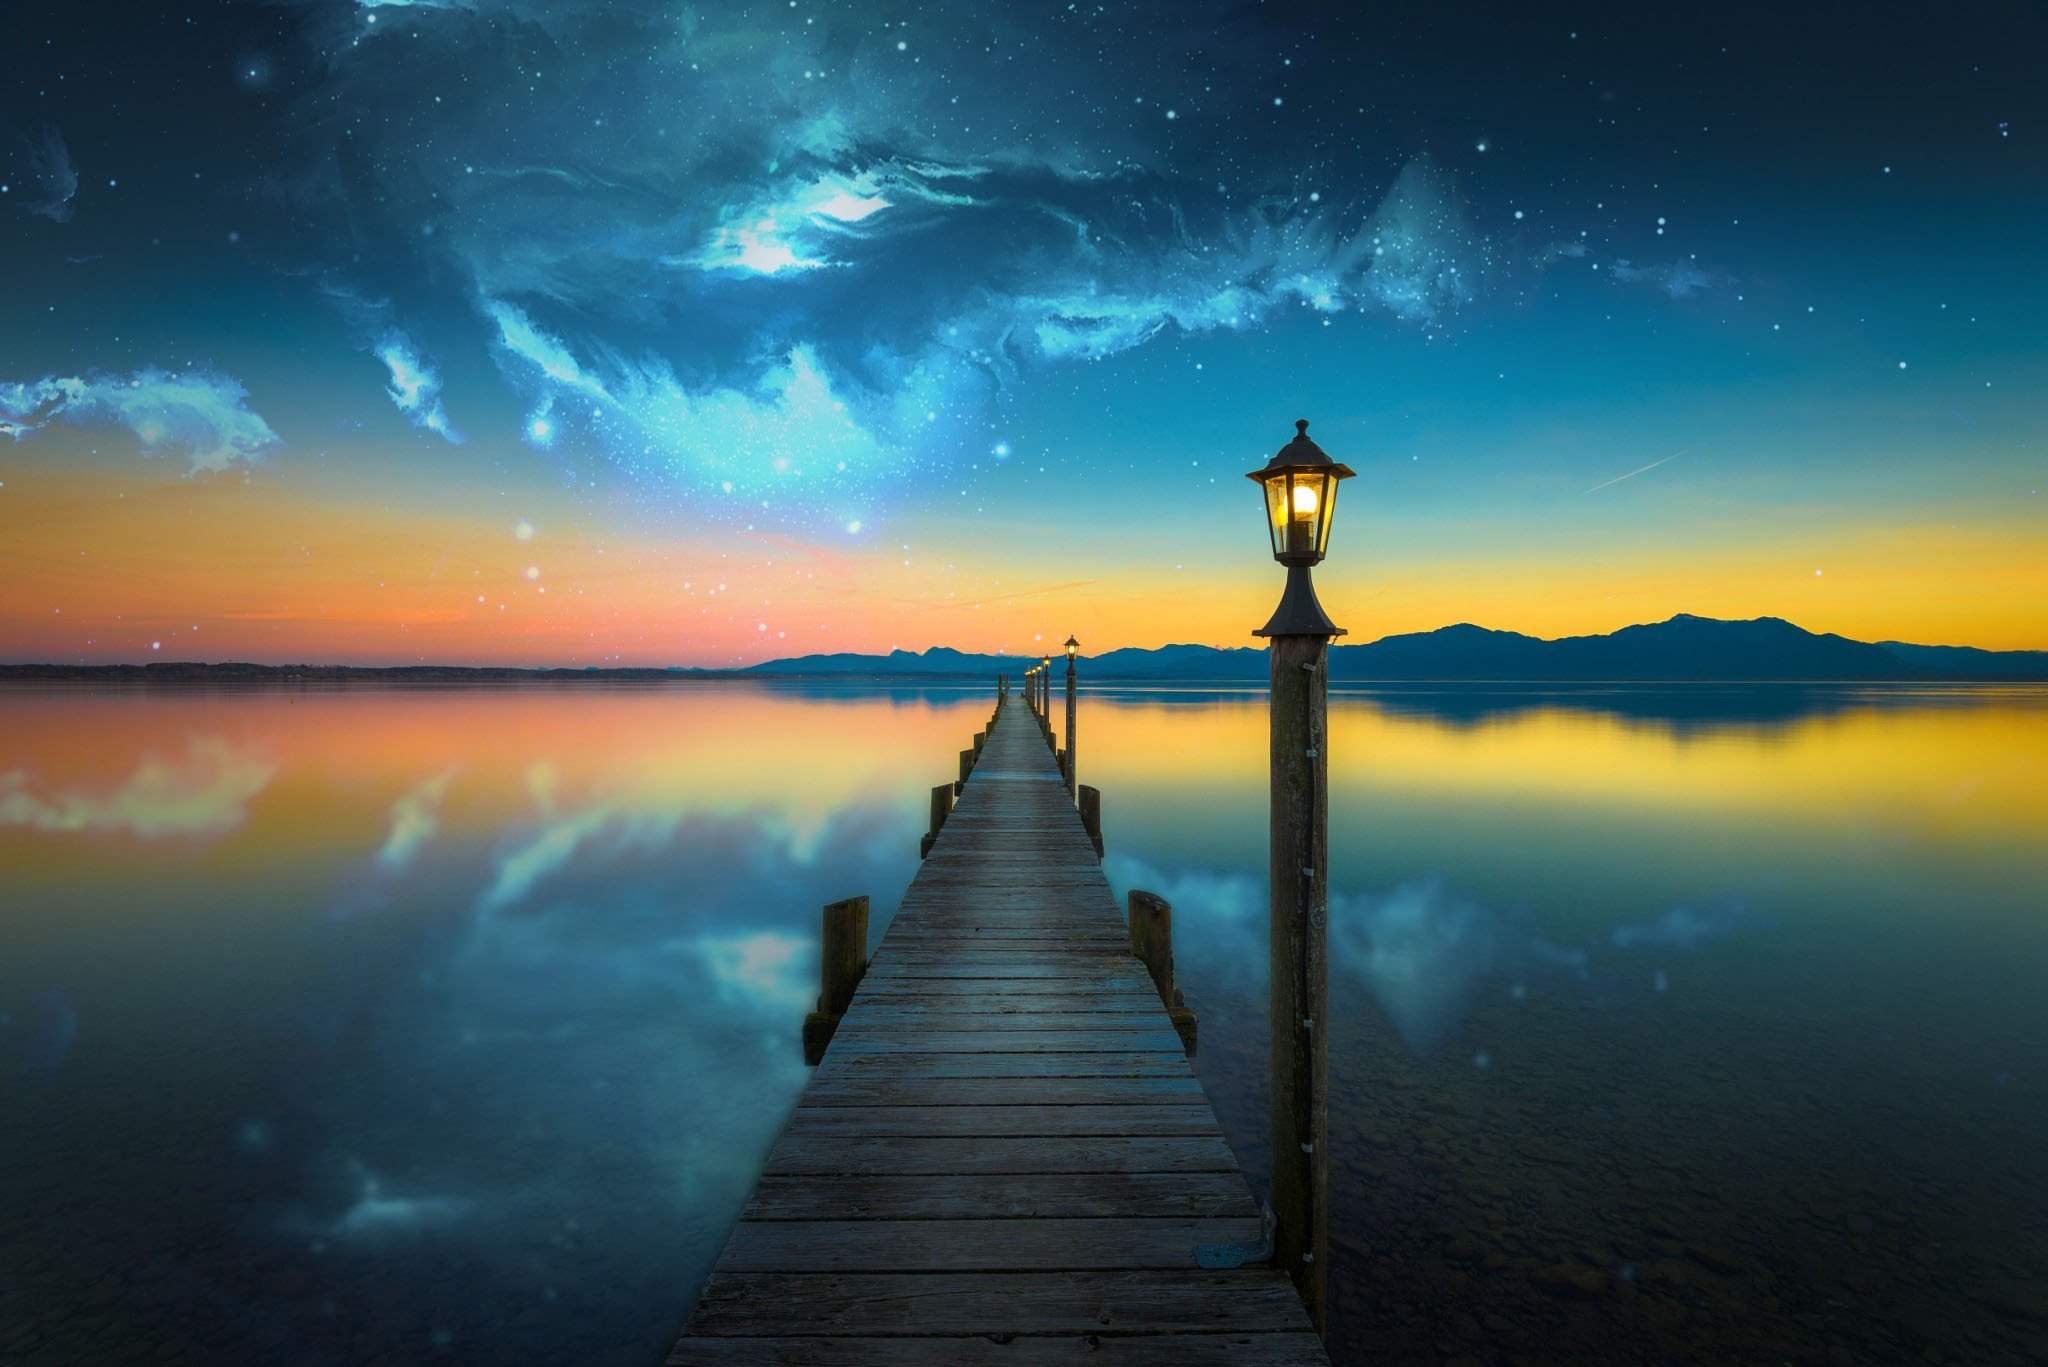 nebula, Space, Lake, Evening, Photo manipulation, Bridge, Water HD